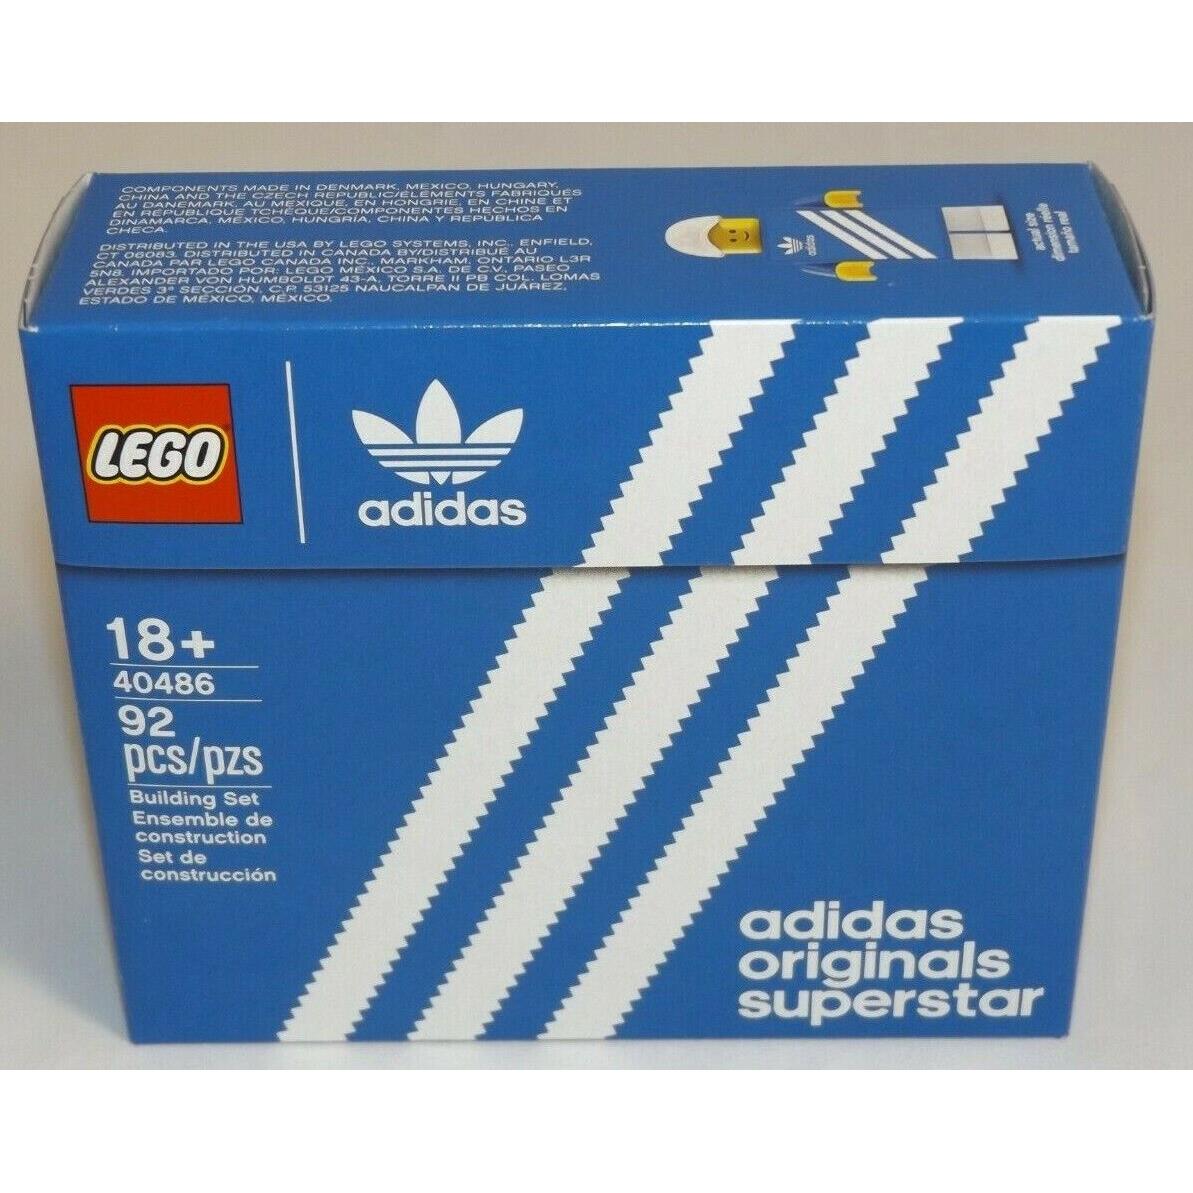 Lego 40486 Mini Adidas Originals Superstar Shoebox Ghettoblaster Store Exclusive